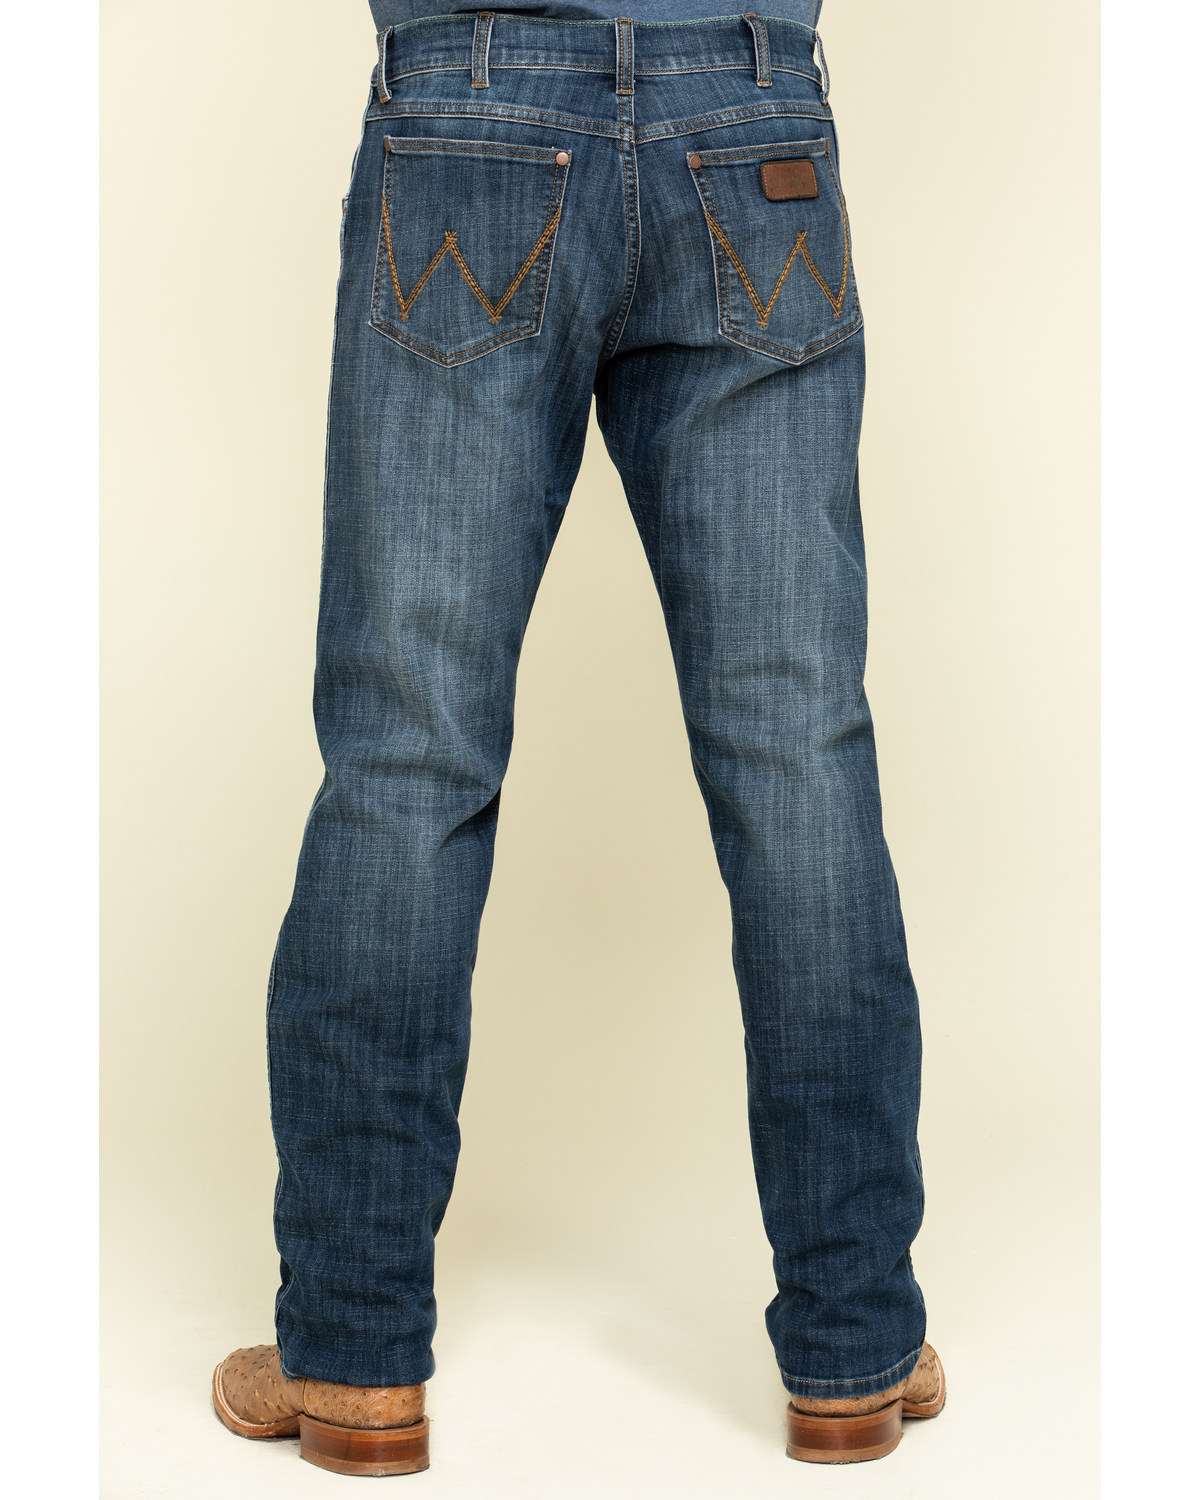 wrangler men's slim straight jeans